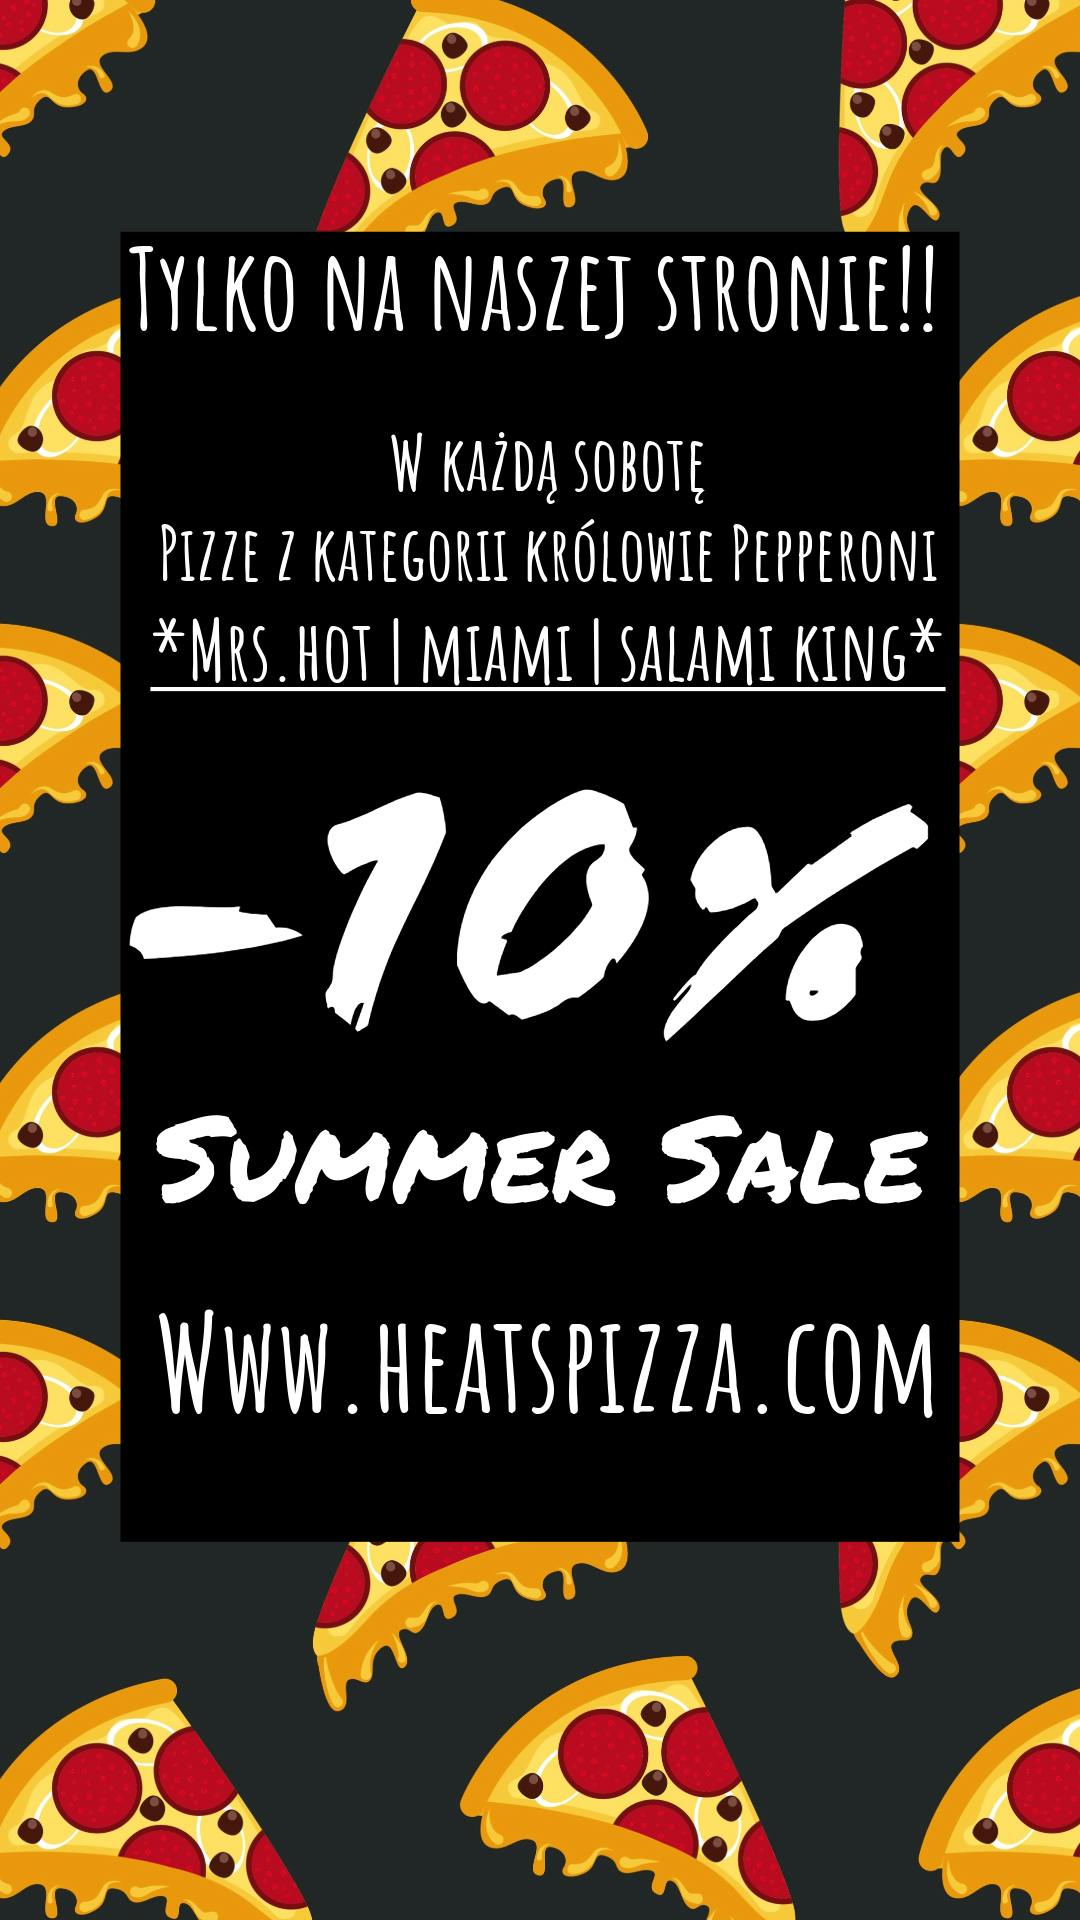 W soboty 10% rabatu na pizze z kategorii Królowie pepperoni!